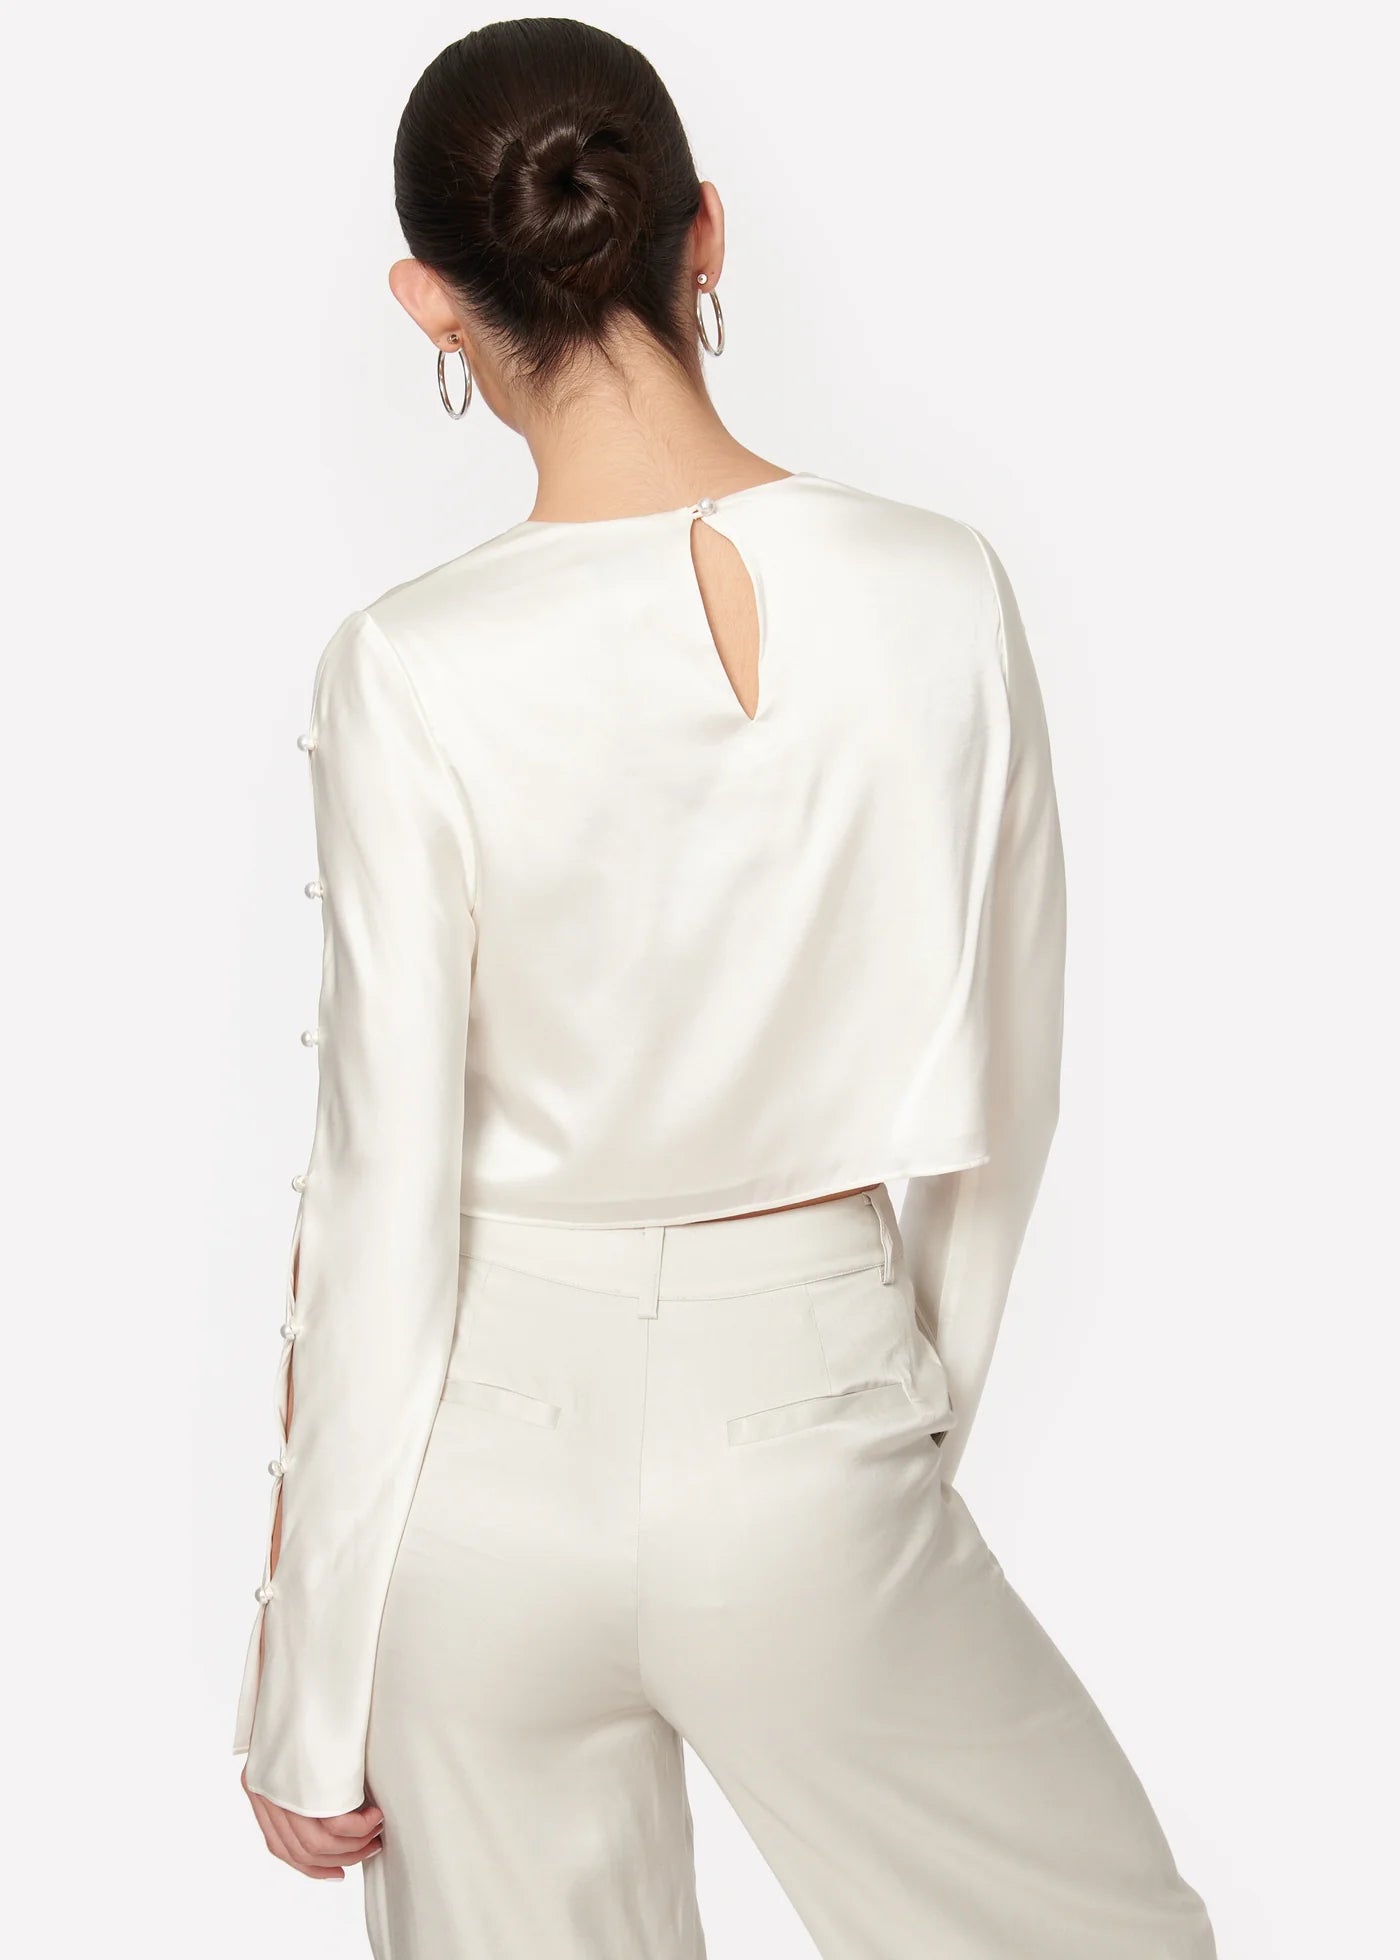 Cami Tatiana Top in White - Estilo Boutique